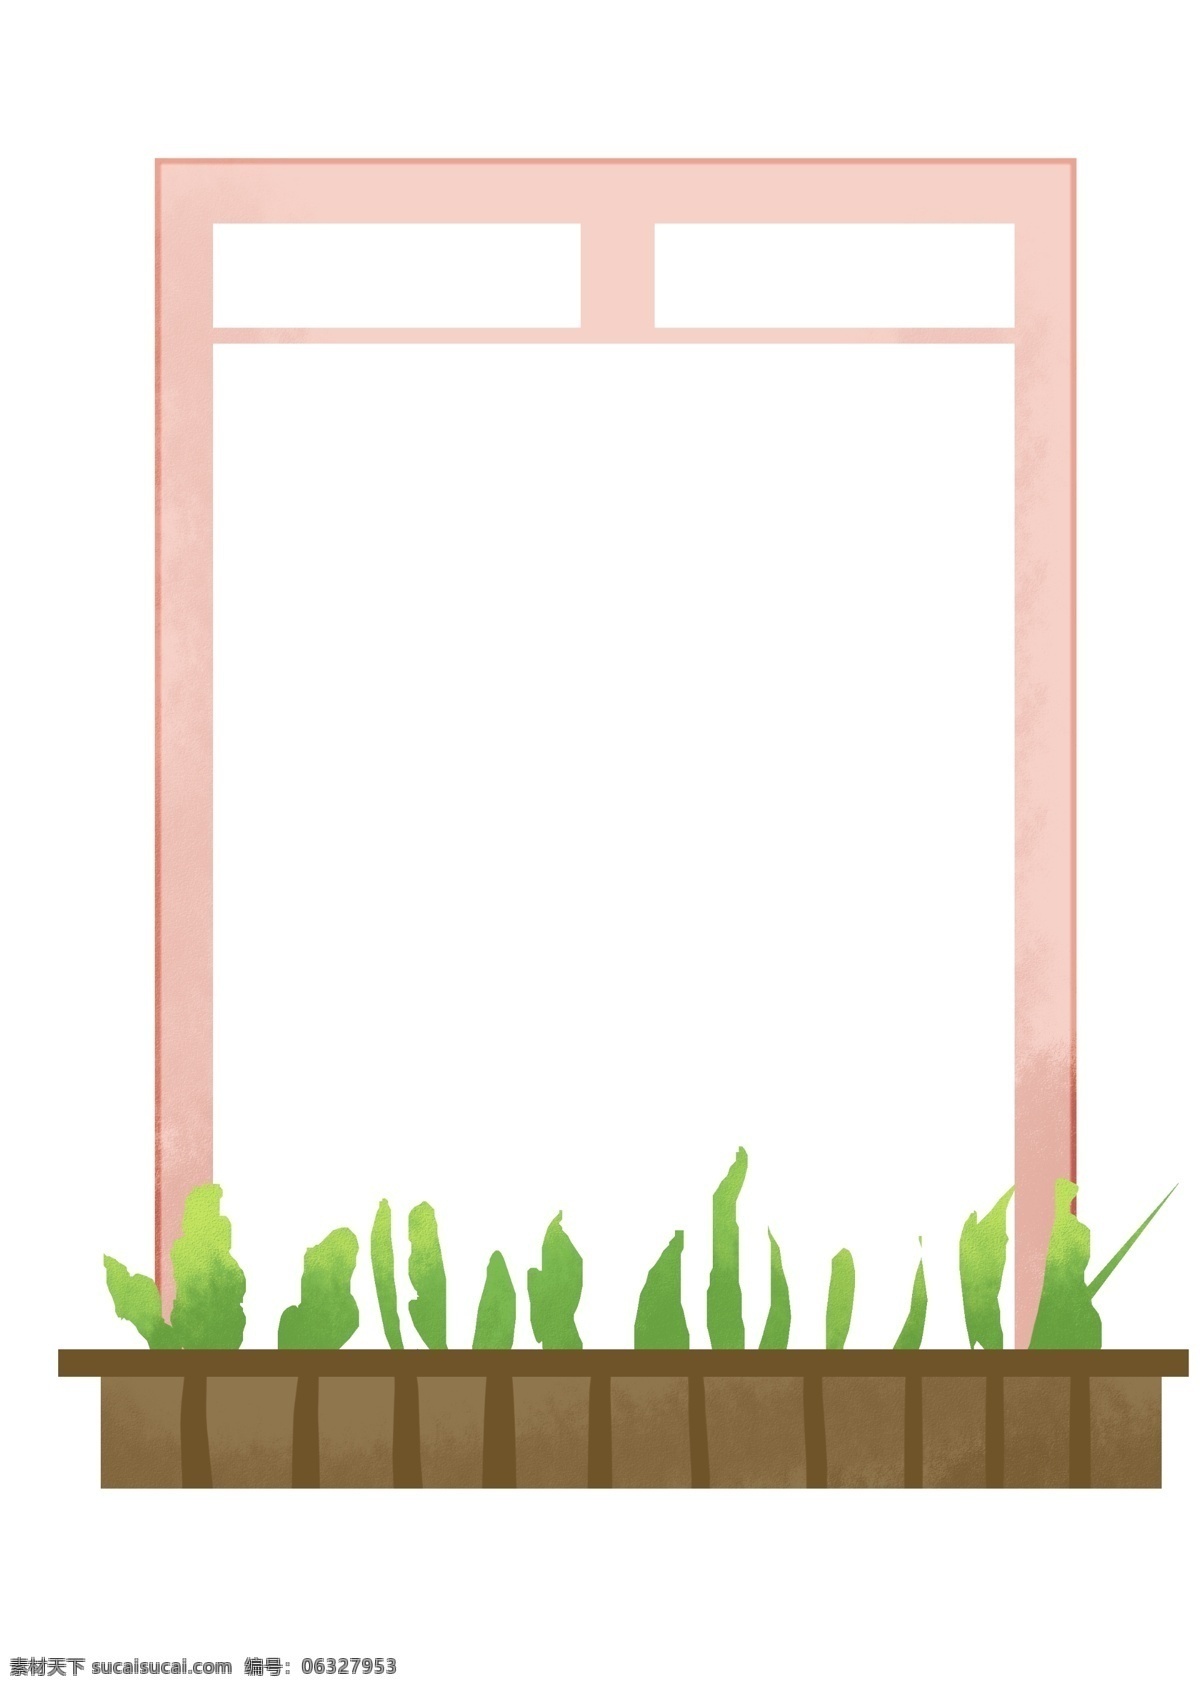 粉色 绿植 花草 边框 粉色边框 围栏栅栏花池 绿植花草边框 长方形 卡通装饰边框